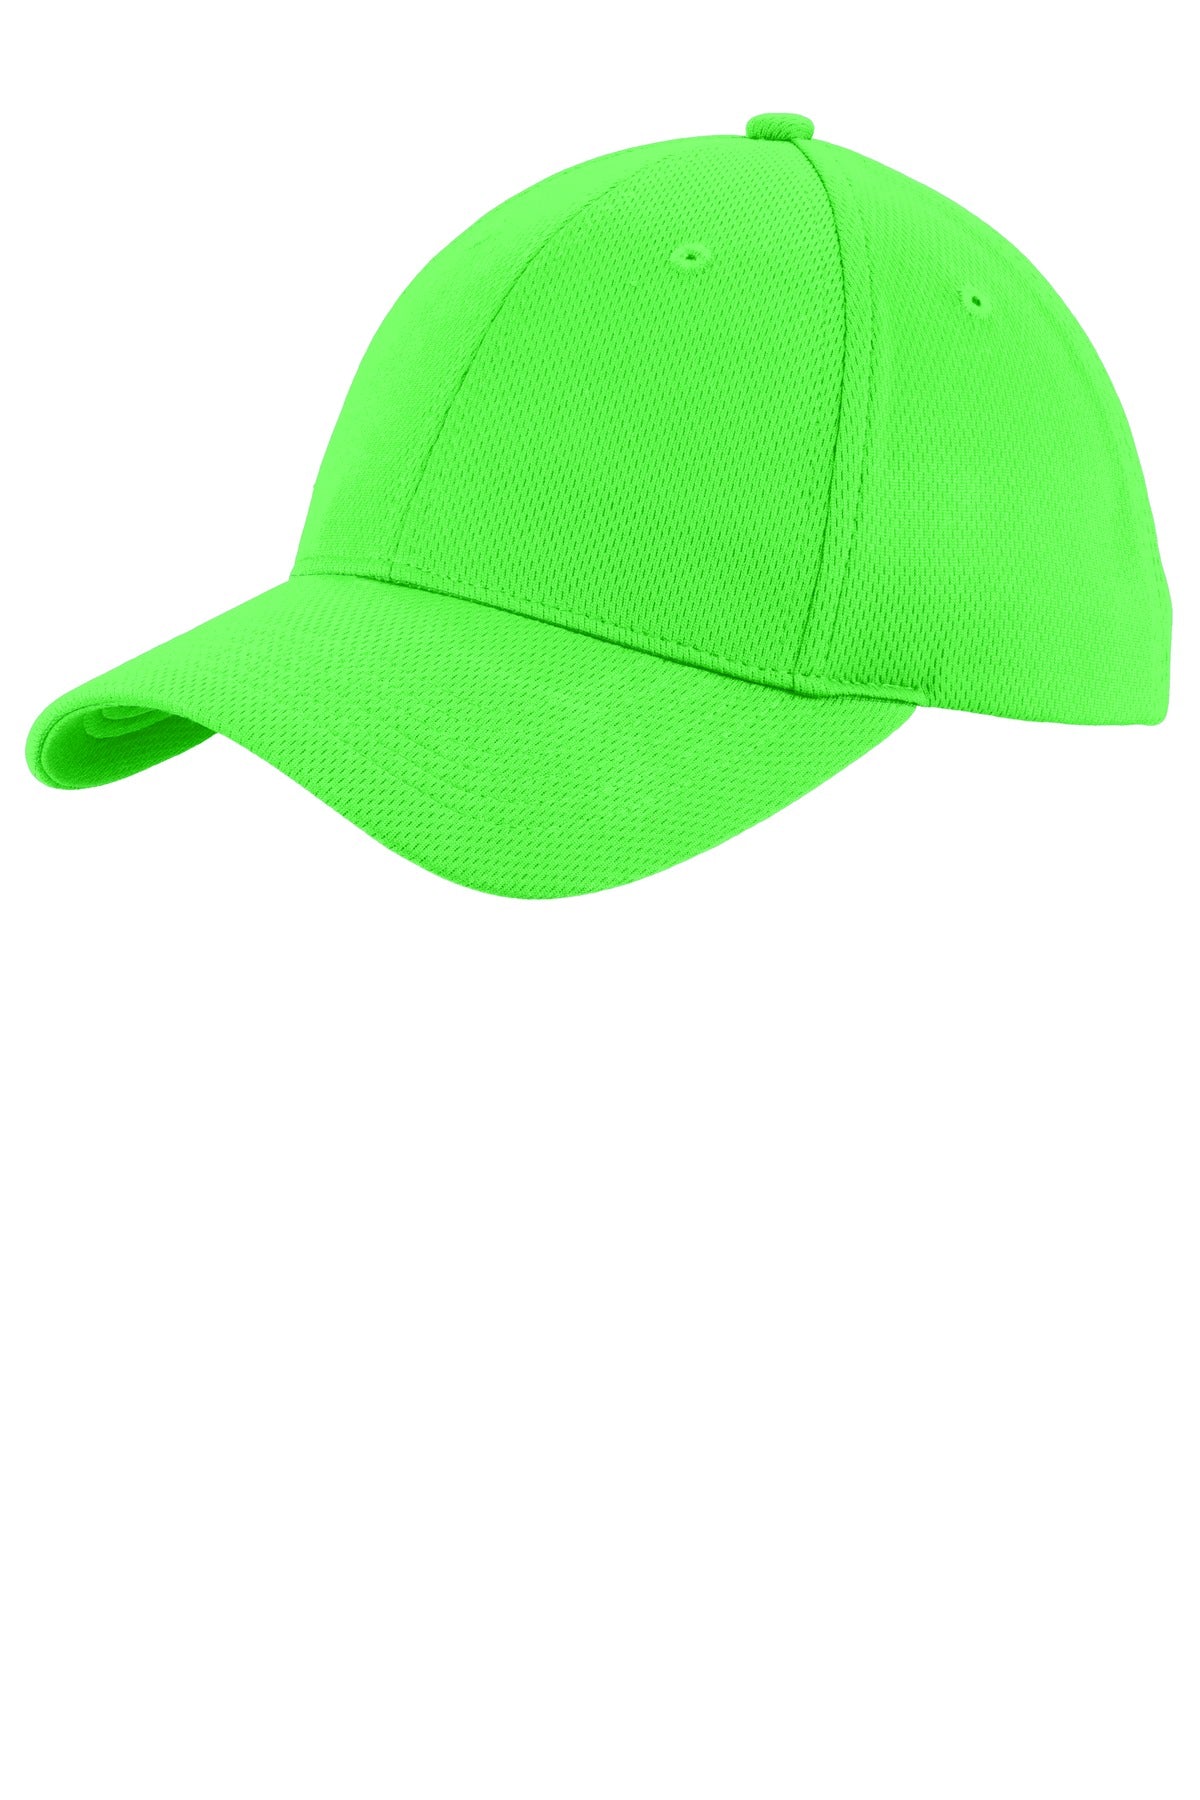 Caps Neon Green OSFA Sport-Tek